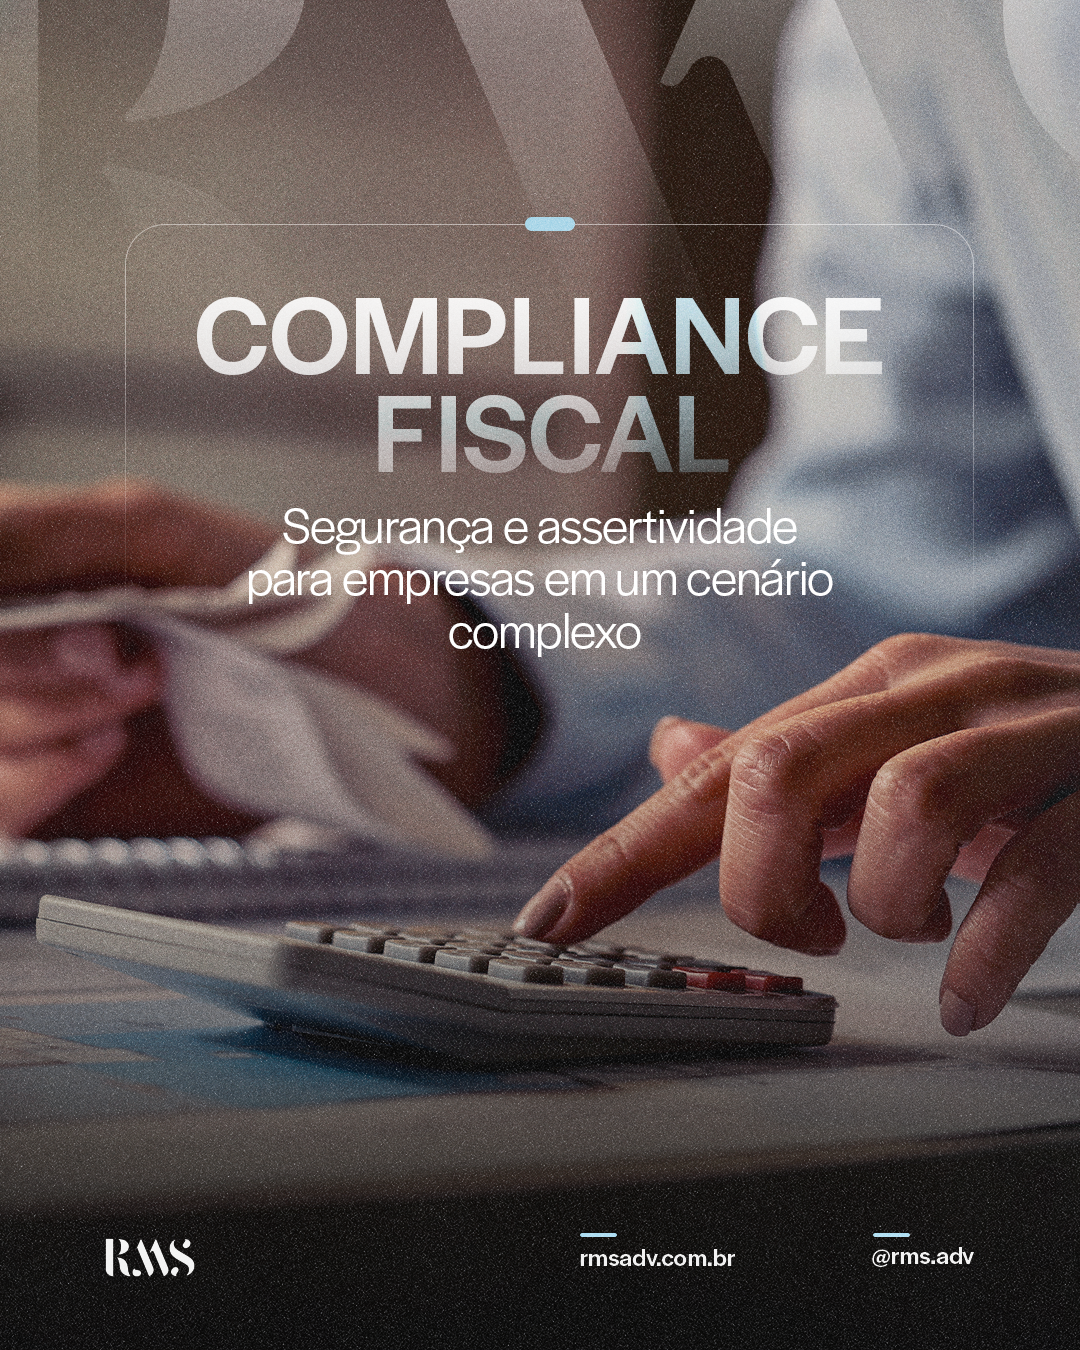 Compliance Fiscal: Segurança e assertividade para empresas em um cenário complexo